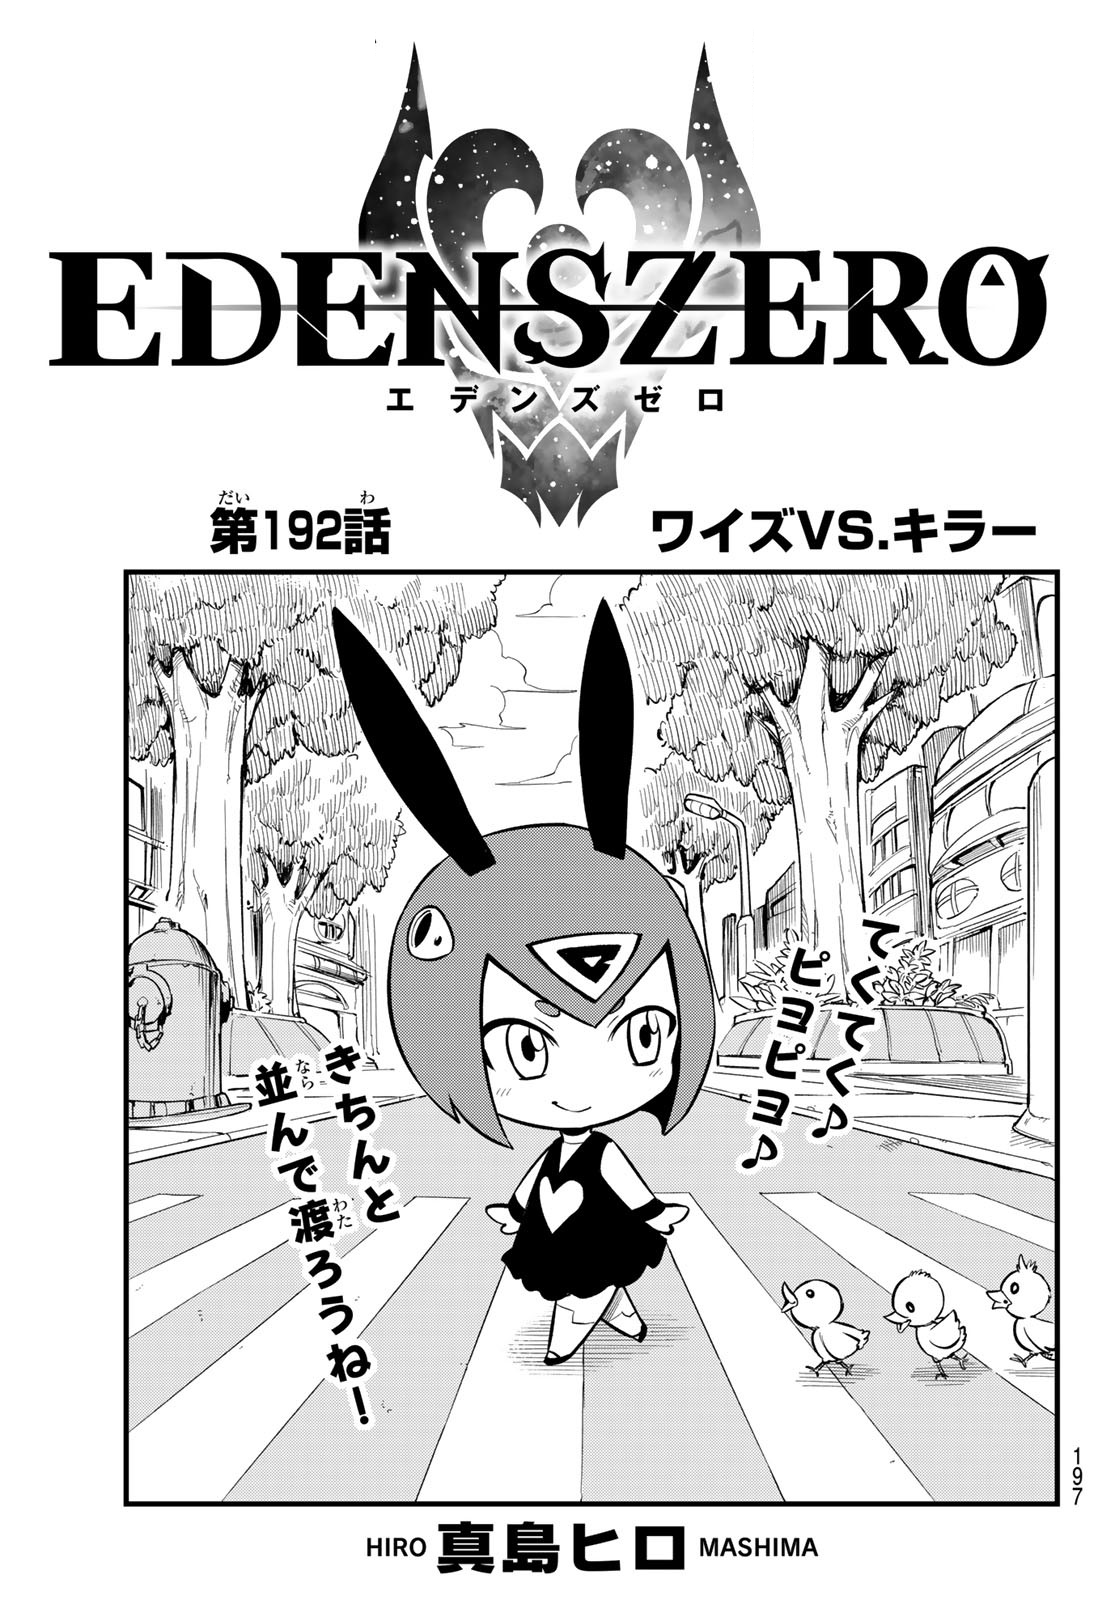 Manga Thrill on X: Edens Zero Season 2 Episode 10 Preview! https